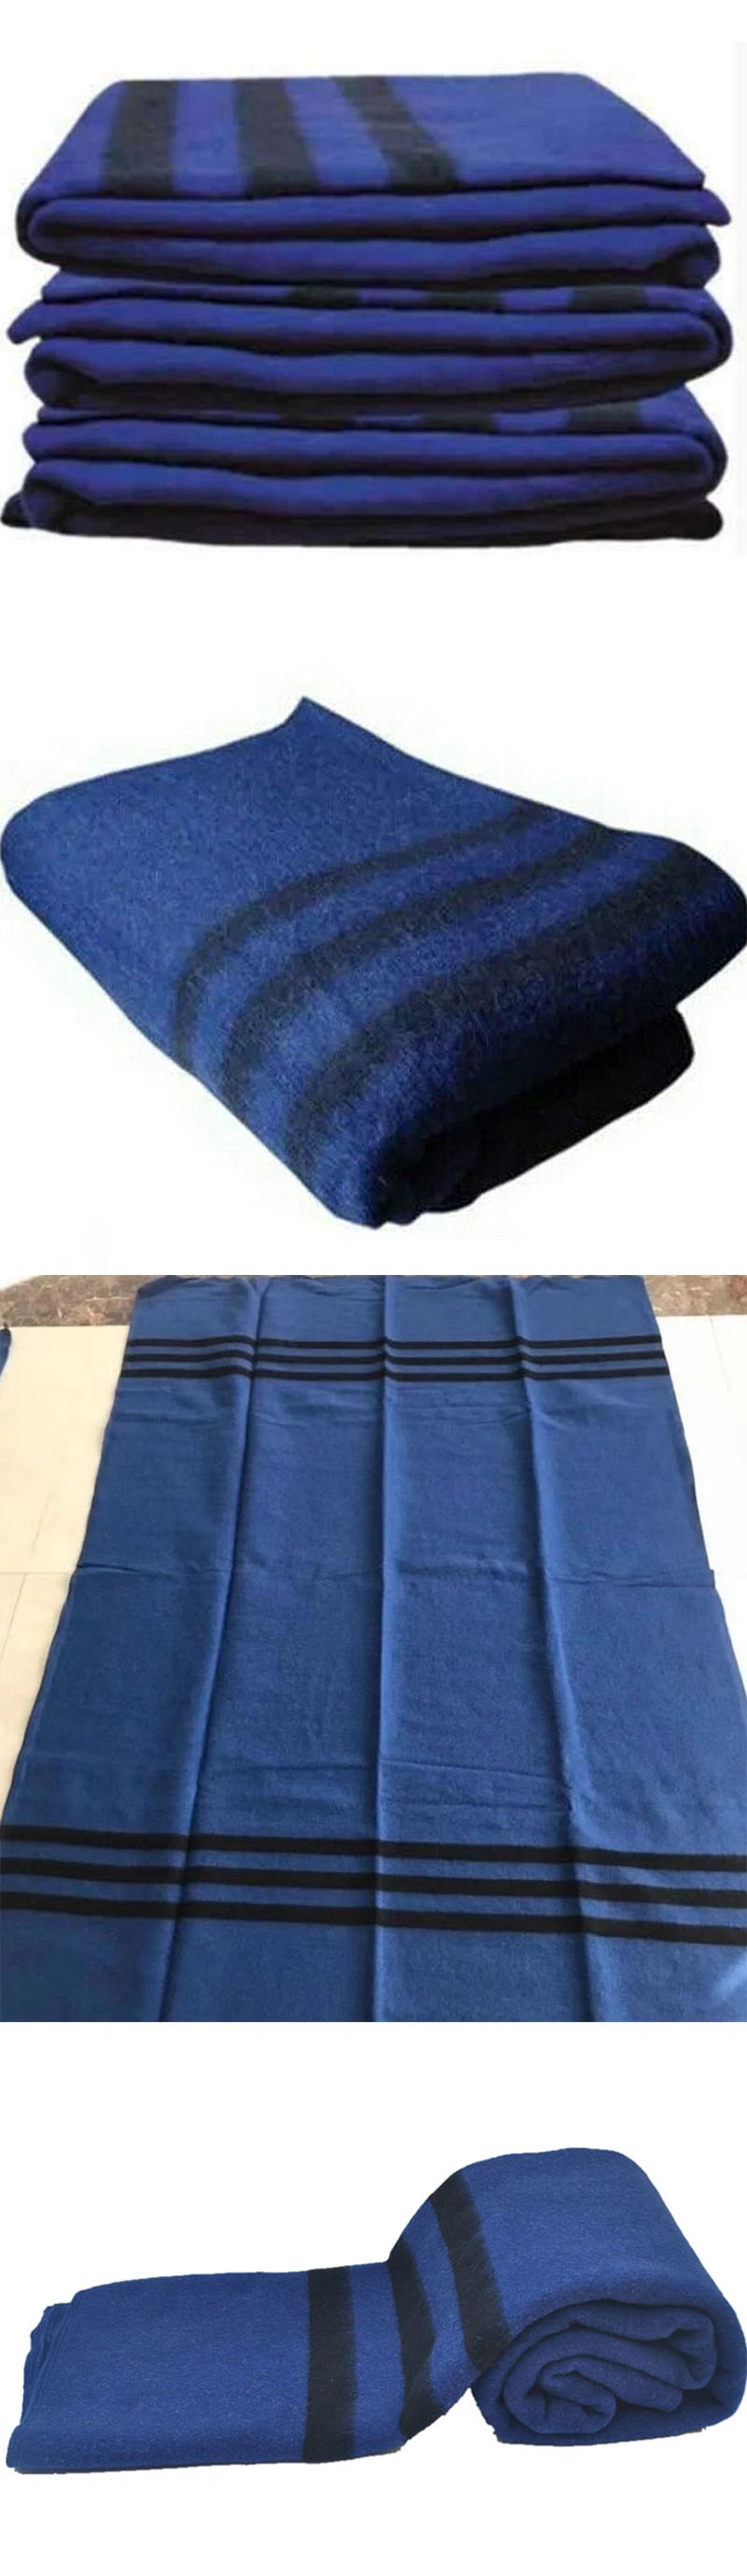 Factory Price Wool Blanket Custom Striped Blanket Woolen Camp Blanket